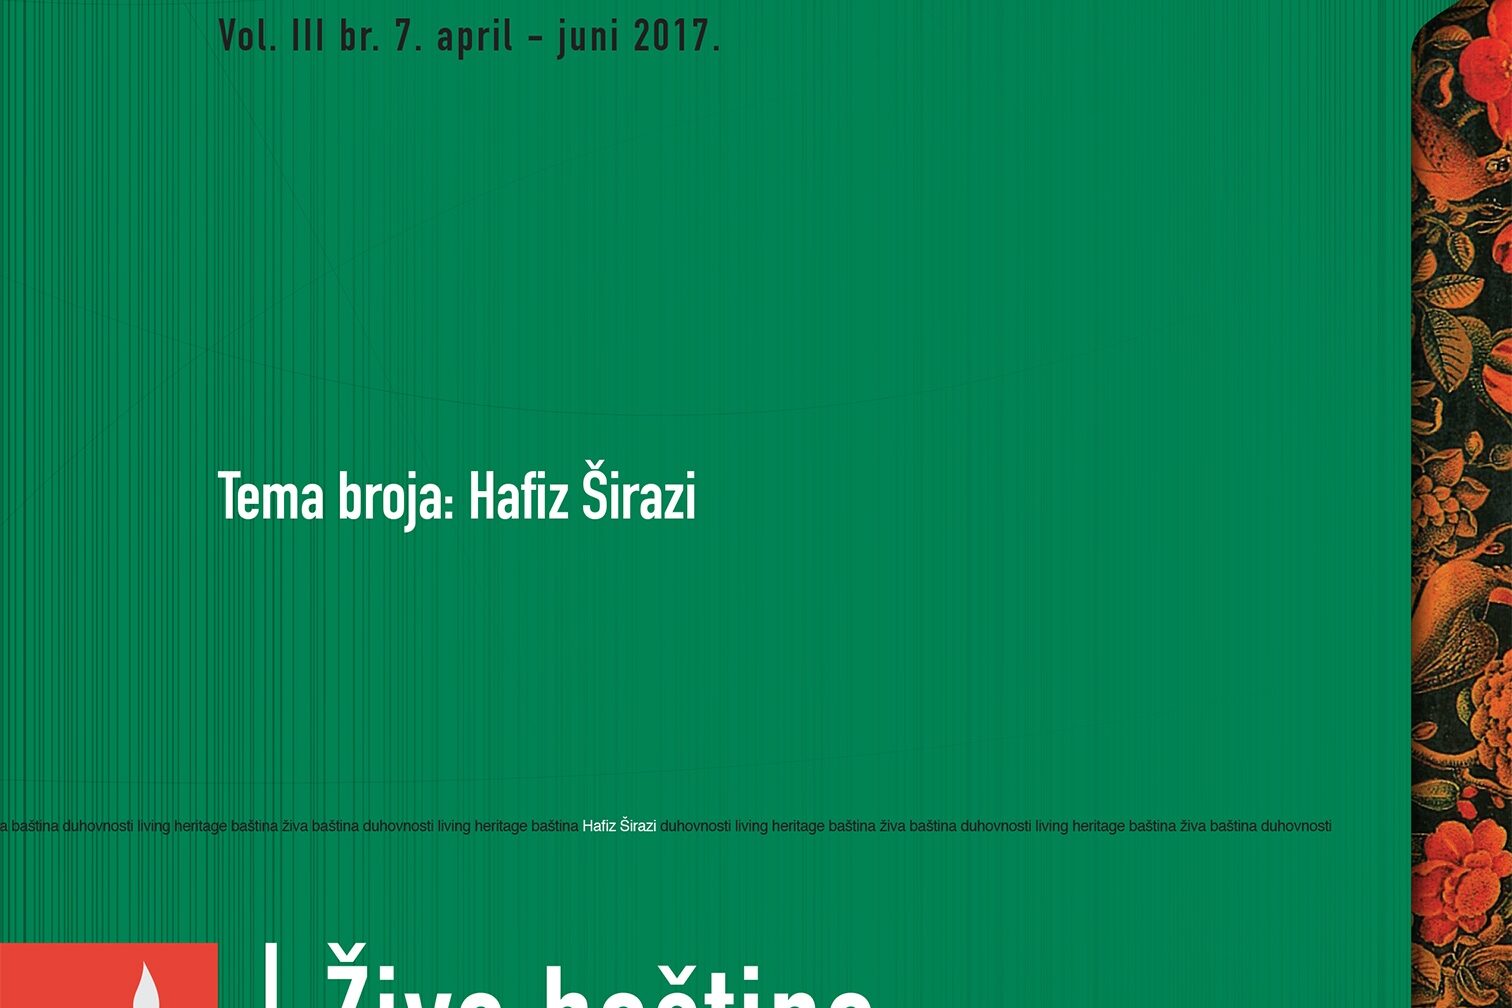 Hafiz Širazi – Kanonski pjesnik od Balkana do Bengala